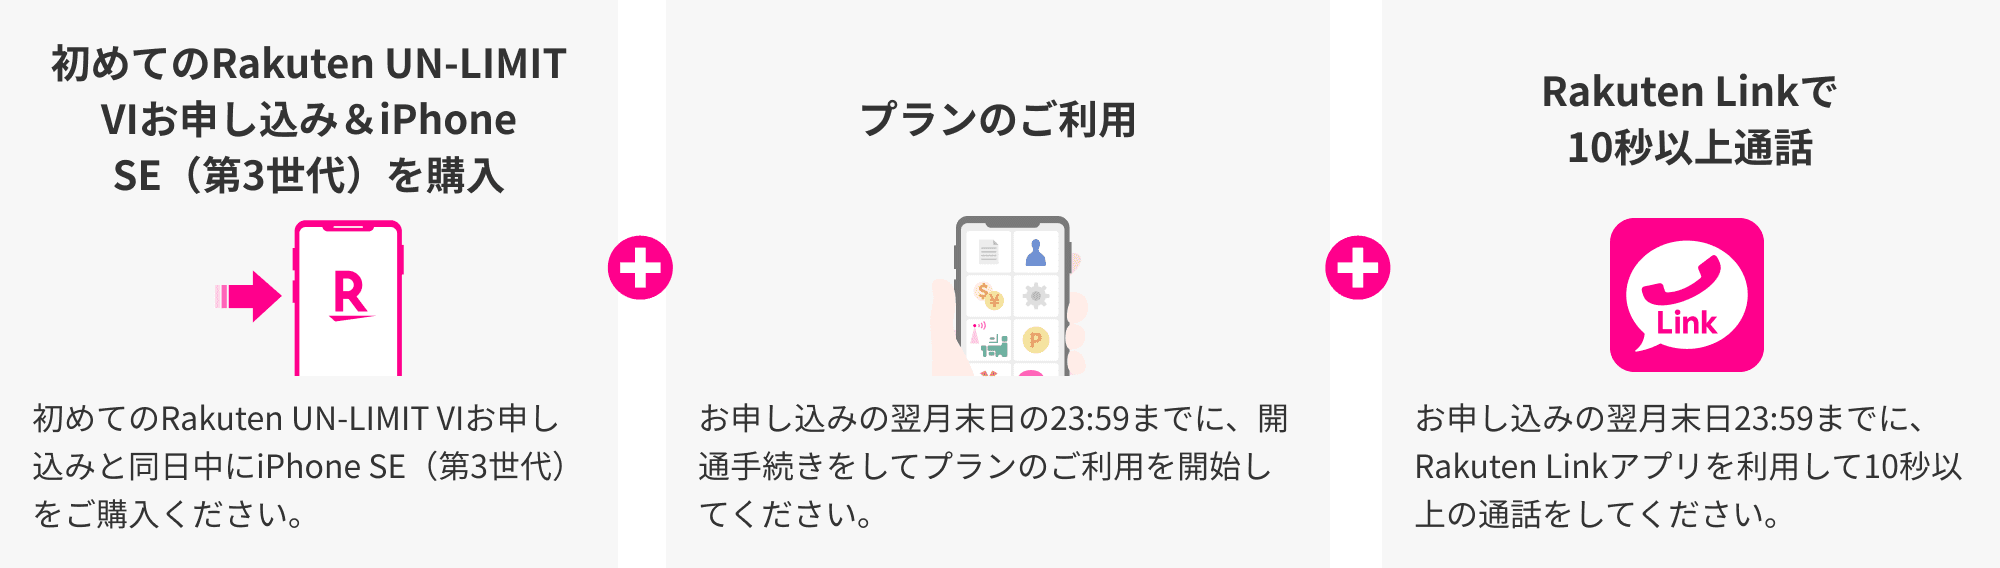 初めてのRakuten UN-LIMIT VIお申し込み＆iPhone SE（第3世代）を購入 初めてのRakuten UN-LIMIT VIお申し込みと同日中にiPhone SE（第3世代）をご購入ください。プランのご利用 お申し込みの翌月末日の23:59までに、開通手続きをしてプランのご利用を開始してください。 Rakuten Linkで10秒以上通話 お申し込みの翌月末日23:59までに、Rakuten Linkアプリを利用して10秒以上の通話をしてください。